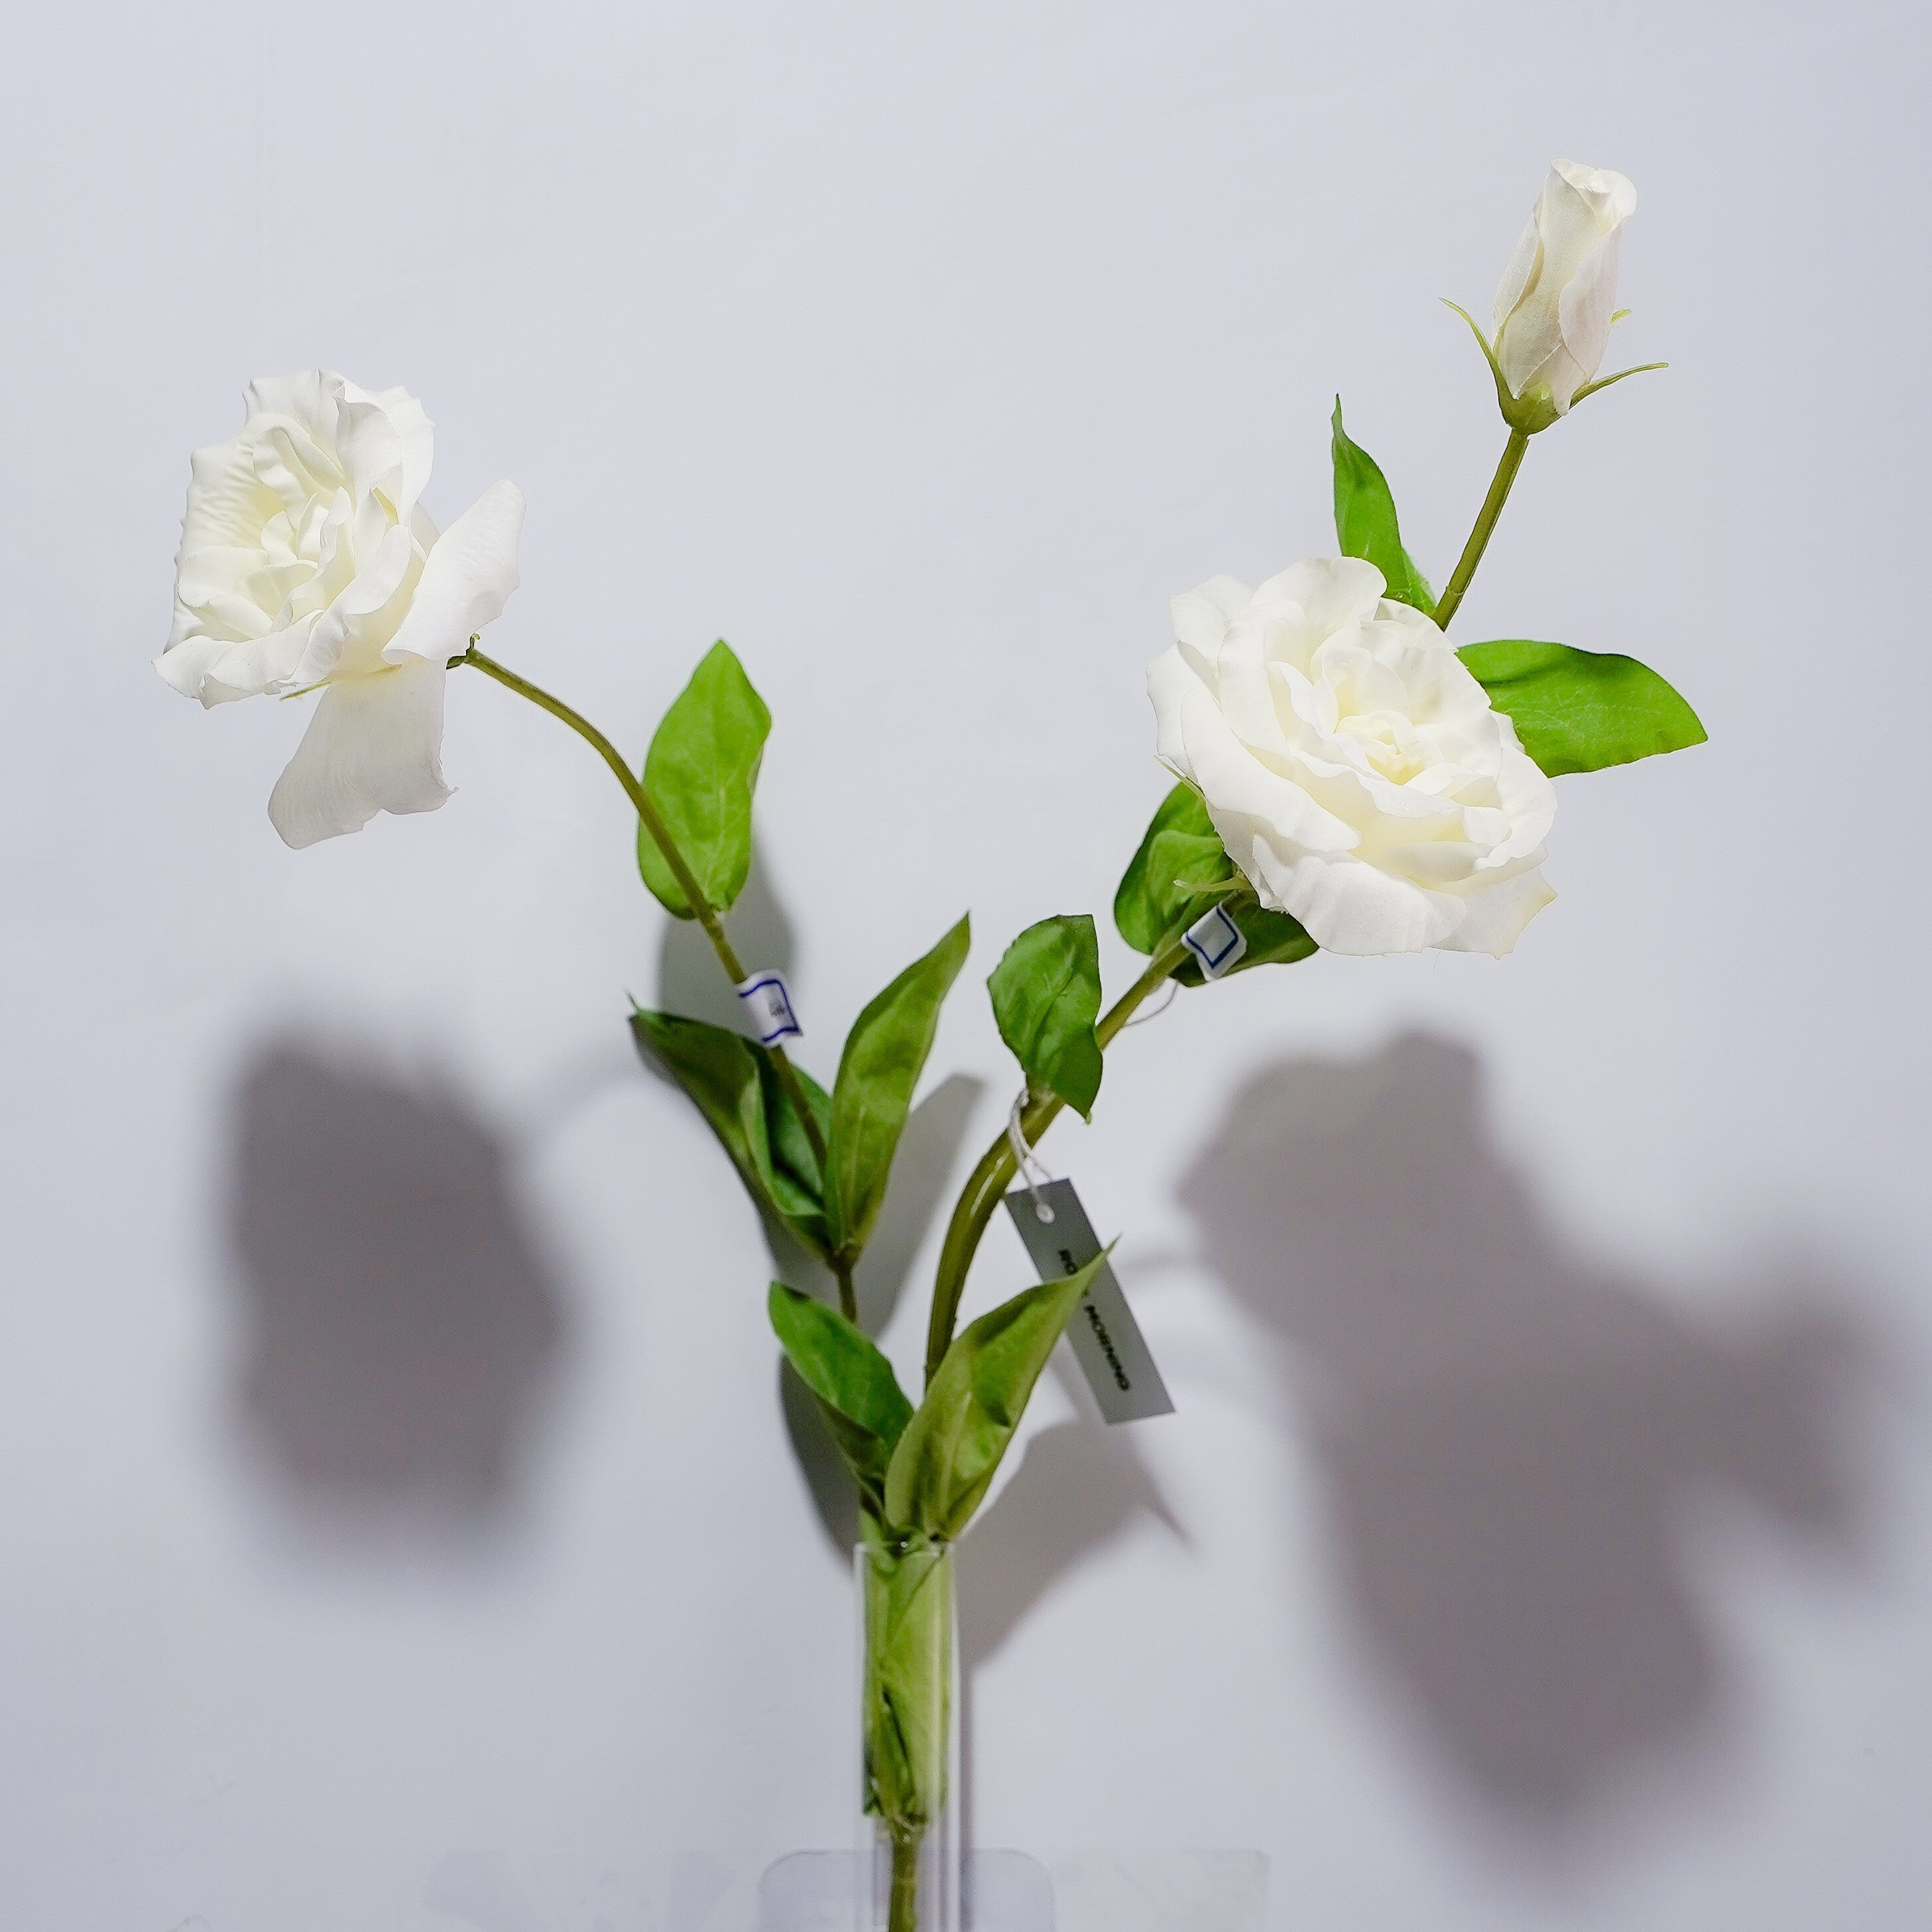 Soft-touch Moisturizing Bellflower Rose Morning